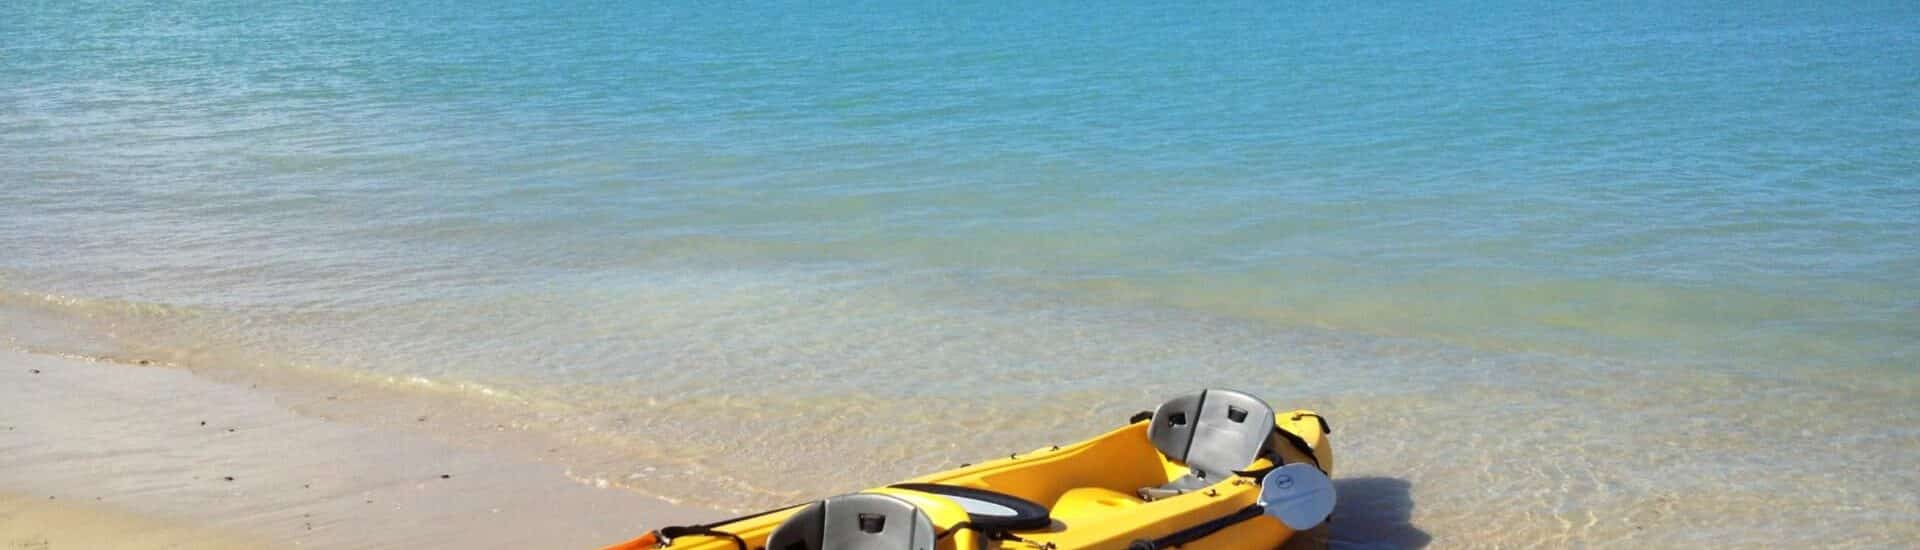 Kayak amarillo en la playa de arena blanca con agua azul al fondo